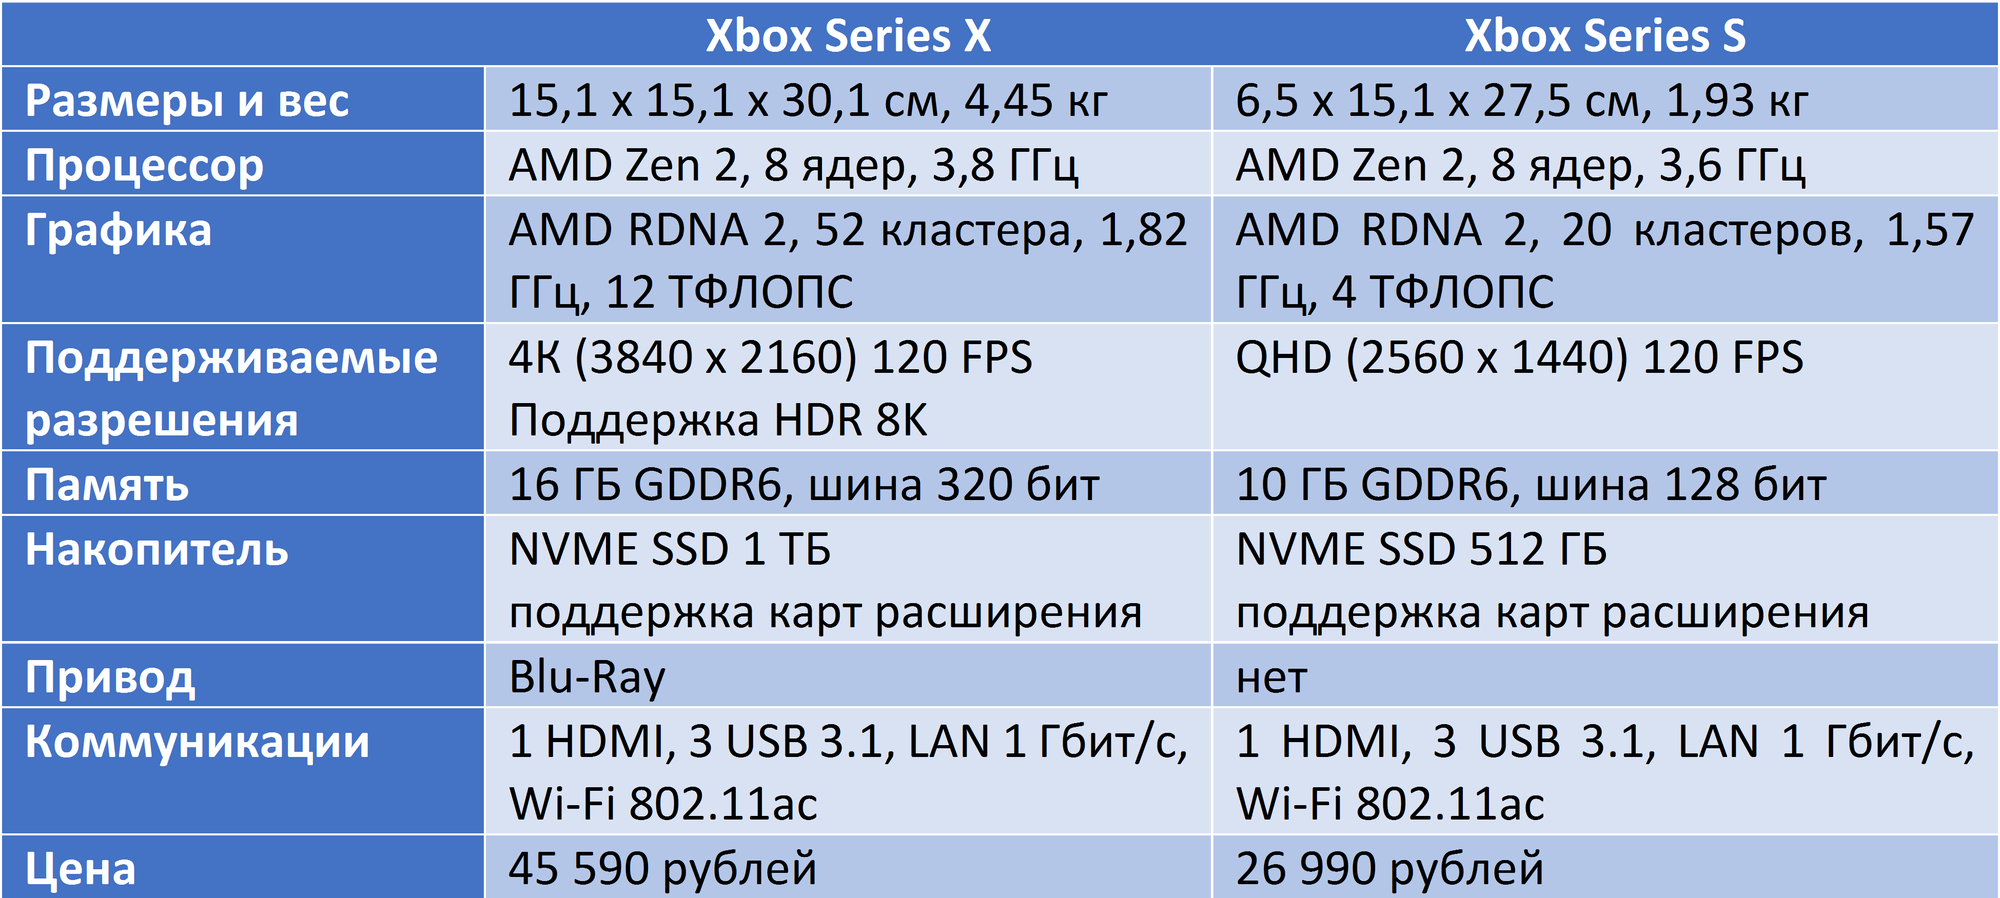 Xbox one x характеристики железа. Xbox Series 1s характеристики. Сравнение характеристик Xbox. Характеристики консолей Xbox. Xbox series x vs s сравнение